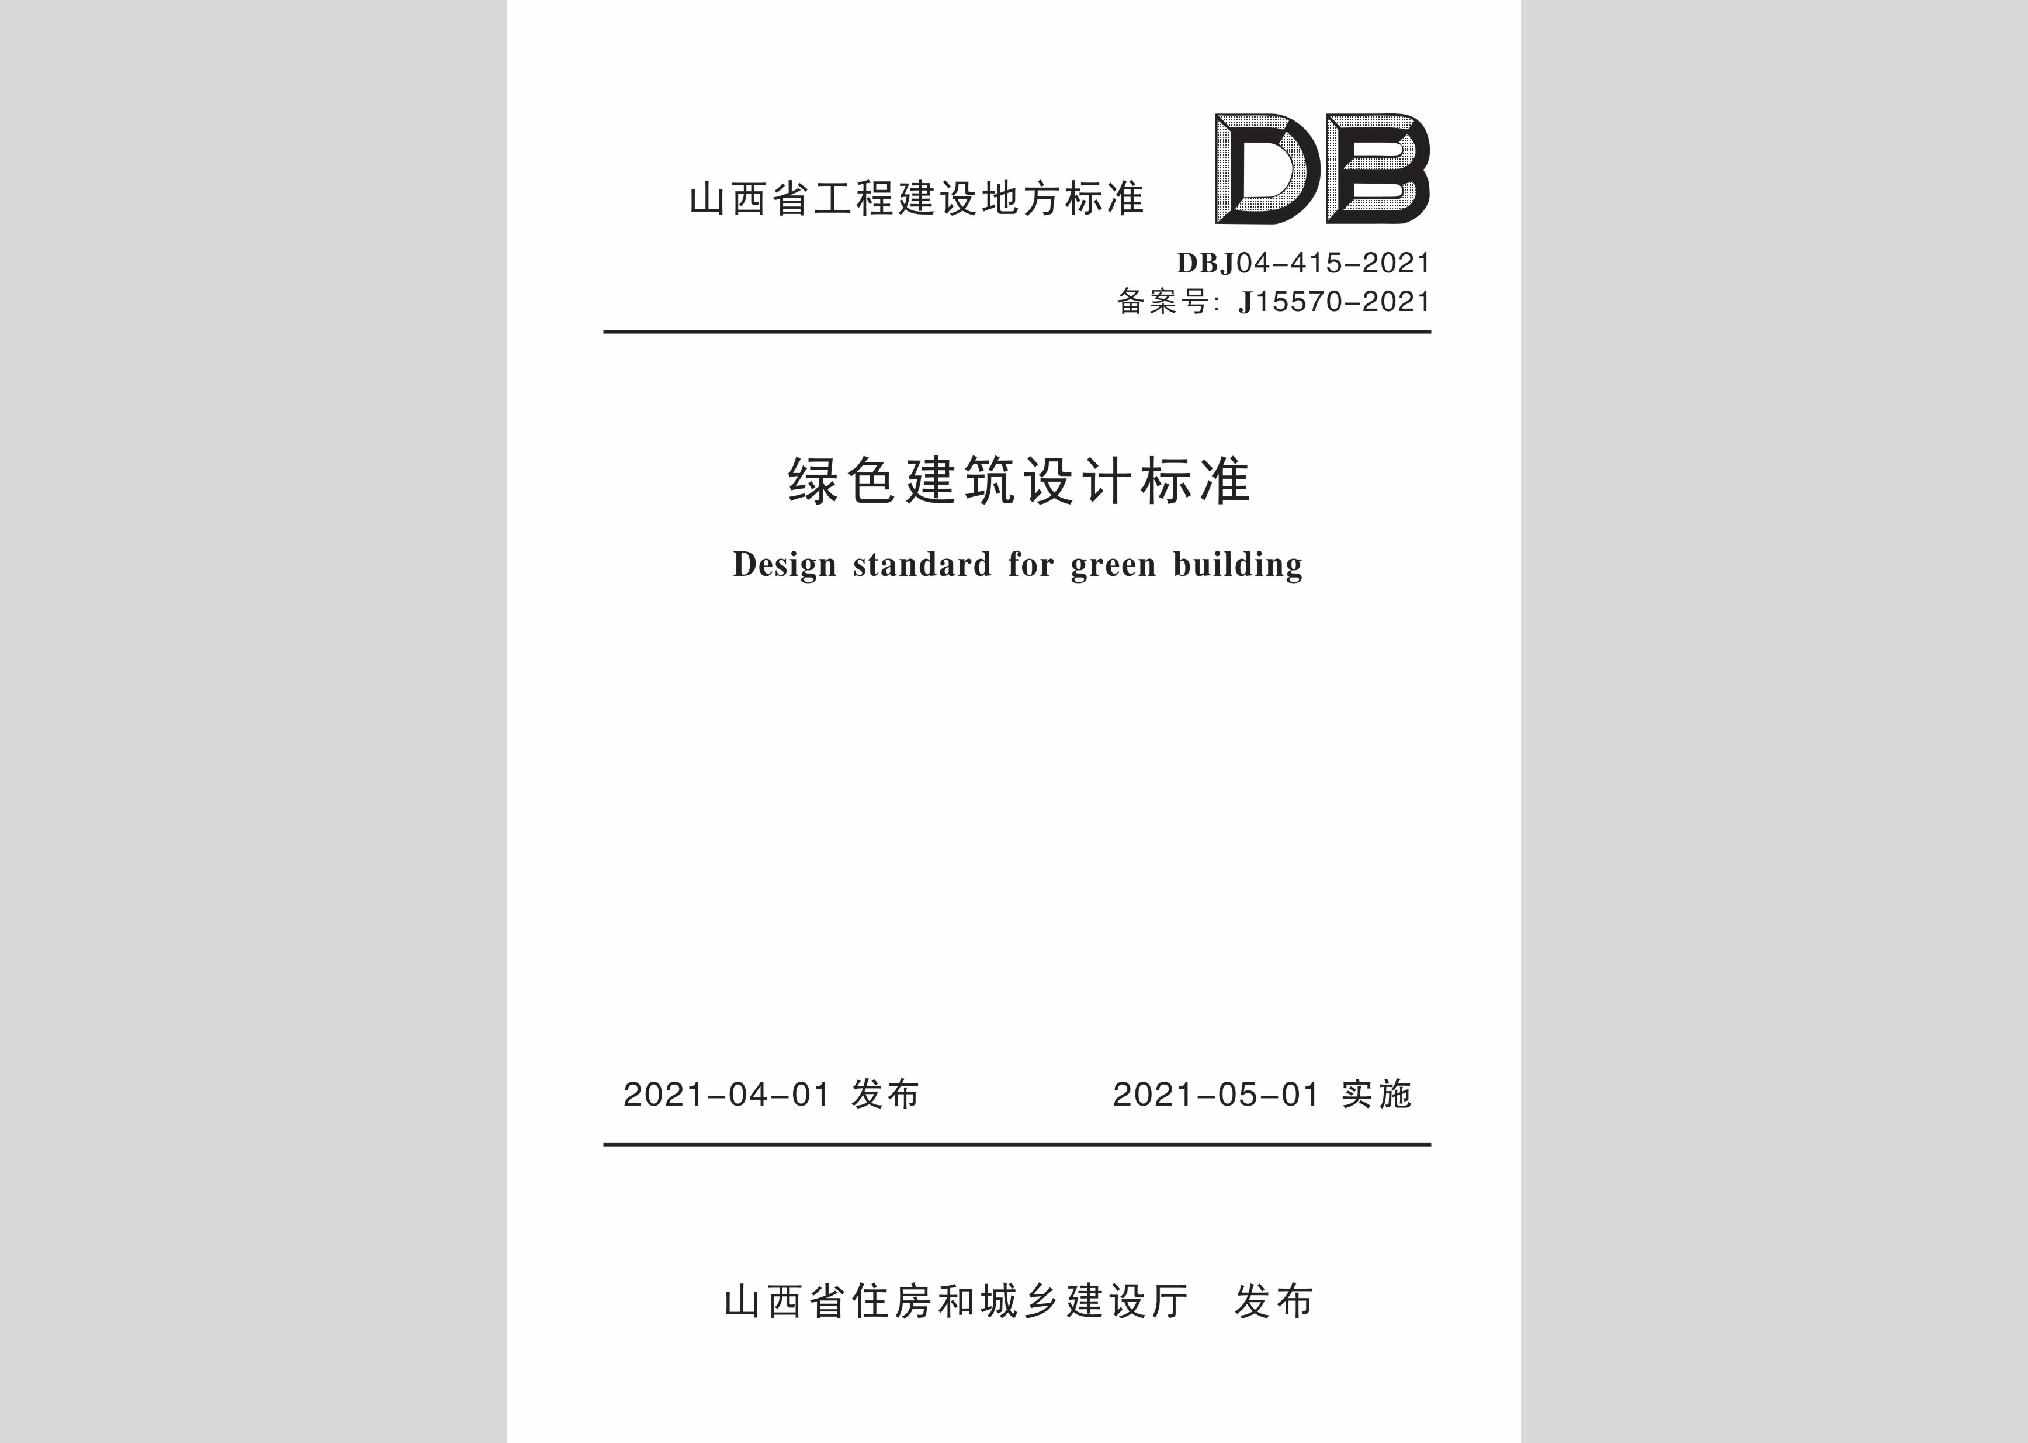 DBJ04-415-2021：绿色建筑设计标准